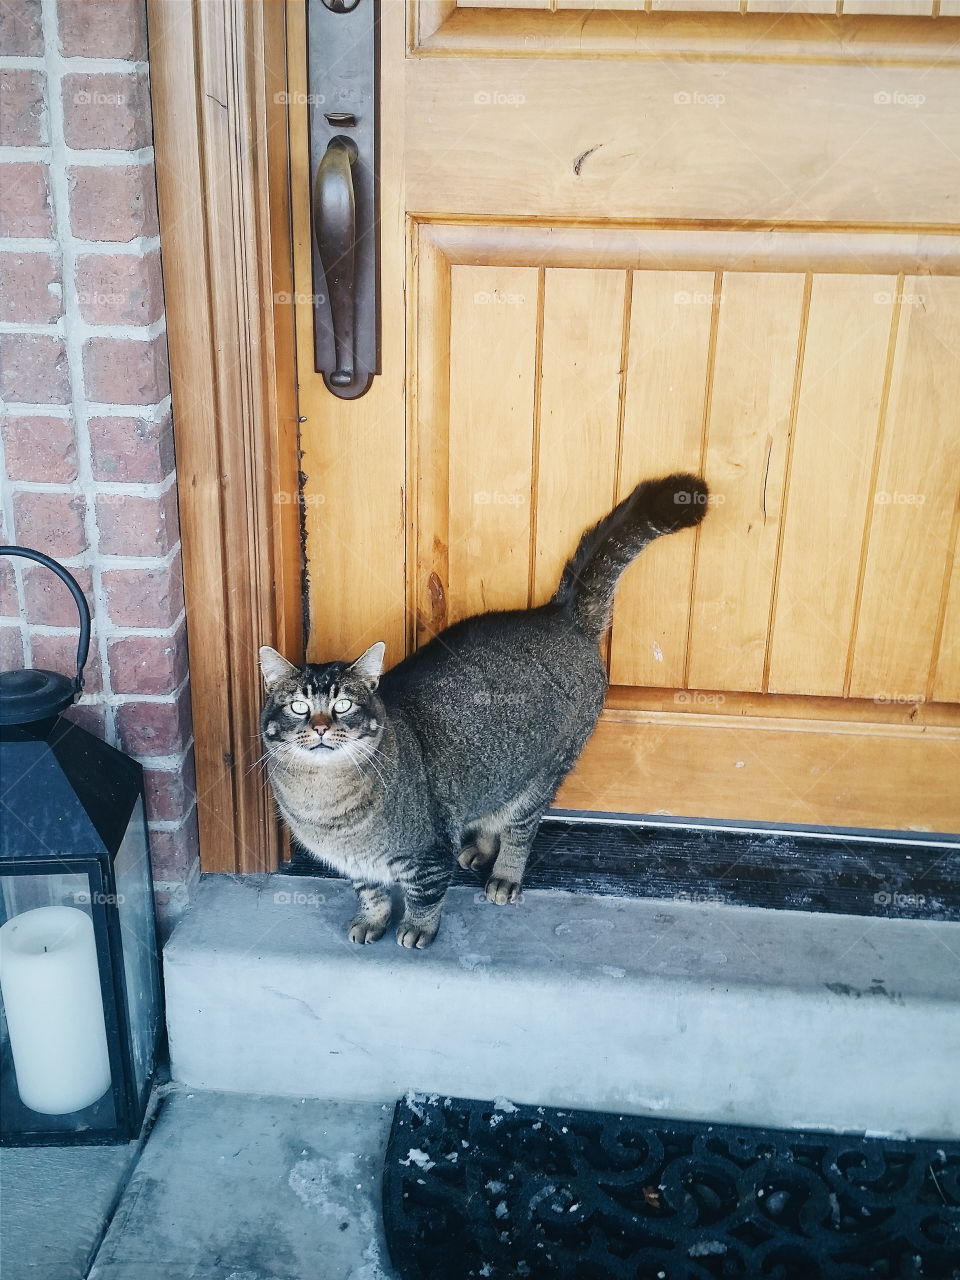 Cat on doorstep. Fat tabby cat in front of a wooden door